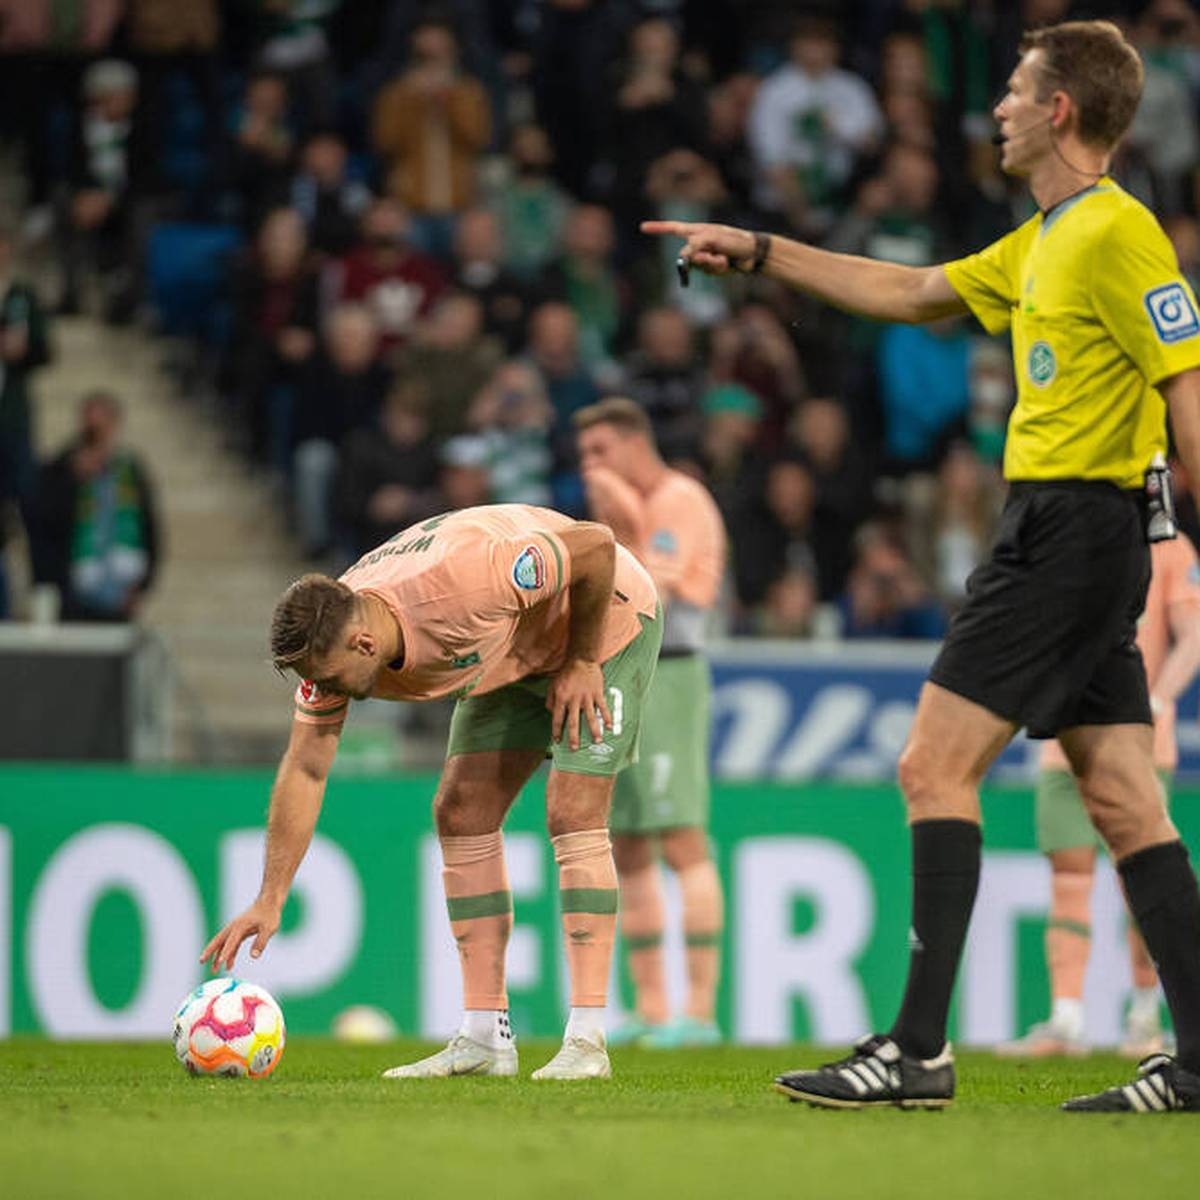 Auch im fünften Auswärtsspiel bleibt Werder Bremen in der Bundesliga ungeschlagen. Der Aufsteiger gewinnt bei der TSG Hoffenheim. Der Siegtreffer sorgt allerdings für Verstimmungen.